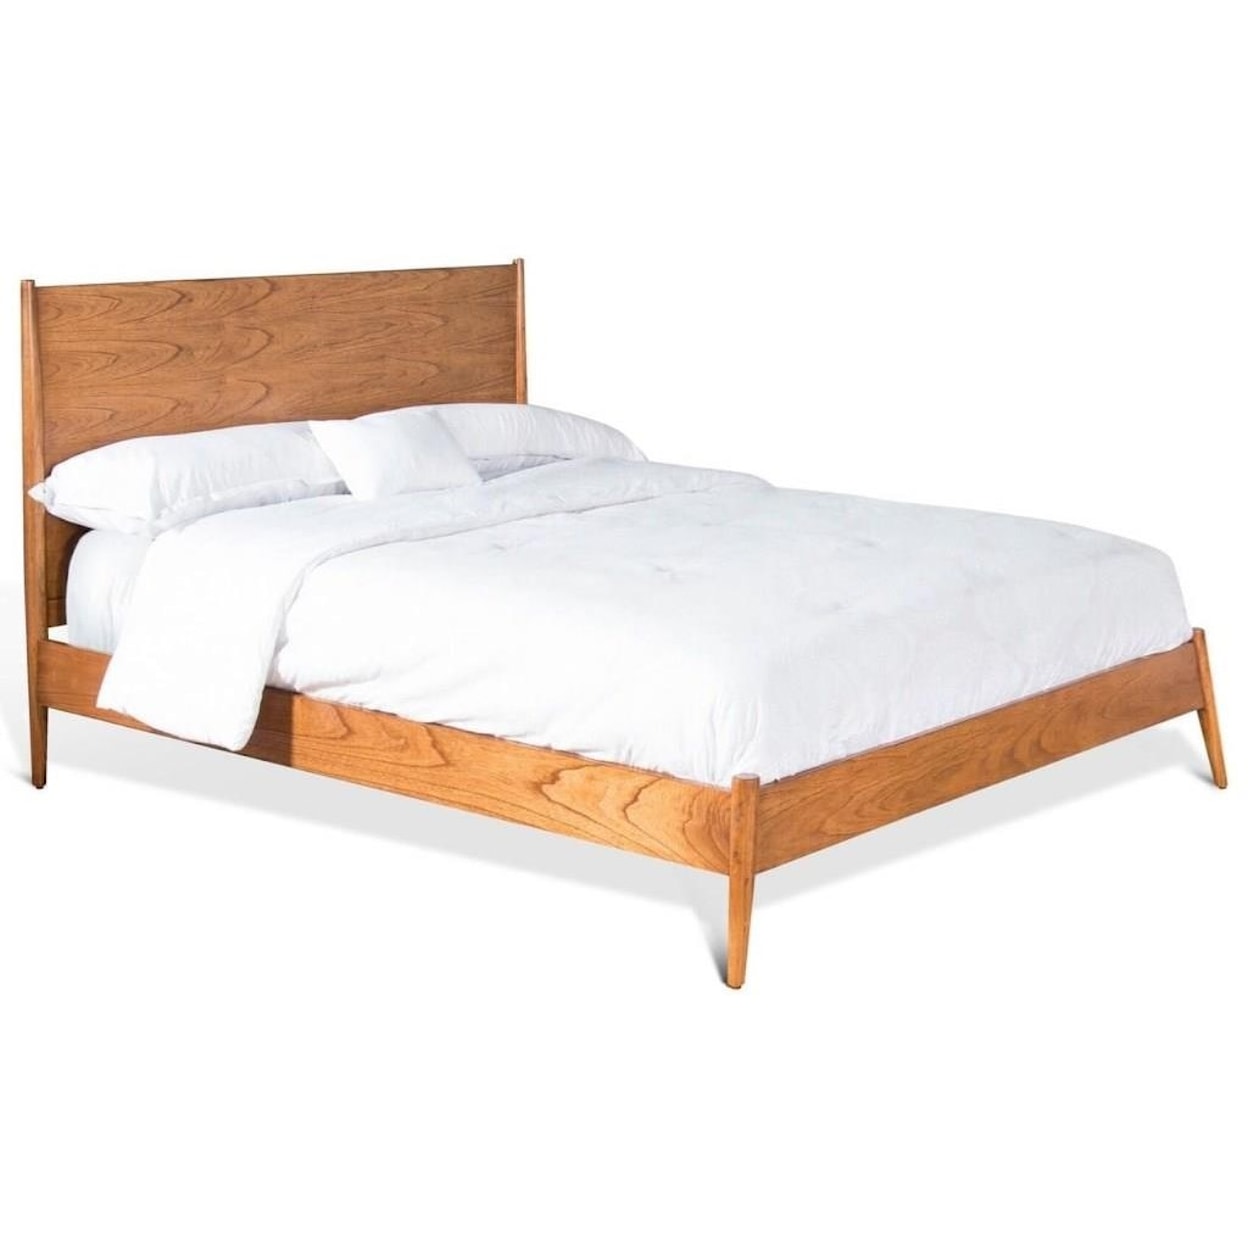 Sunny Designs Bellmore Bellmore King Bed